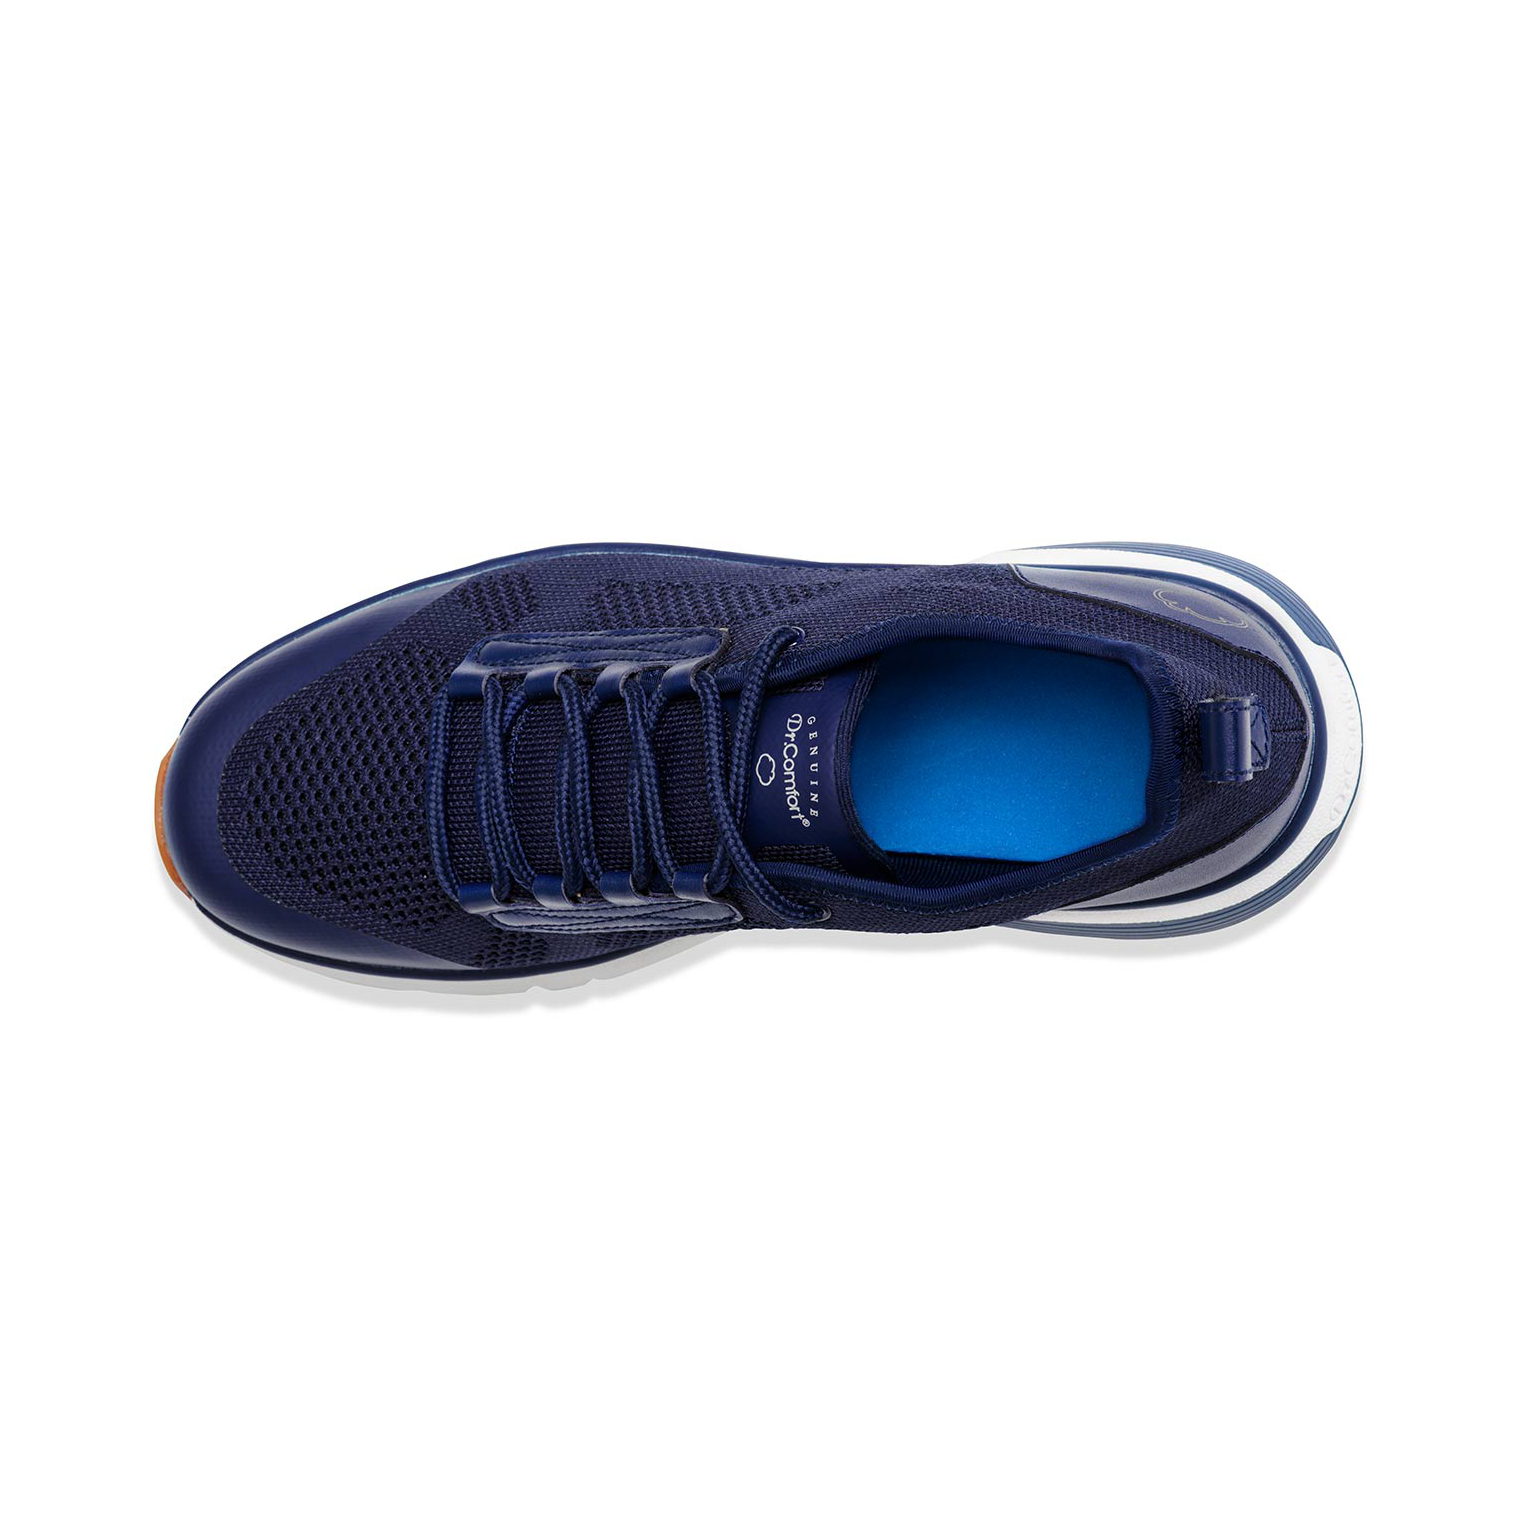 Zusatzbild DR. COMFORT® Jack blau, oben, Orthopädische Schuhe, Freizeitschuh mit stabilisierender und dämpfender Laufsohlenkonstruktion für einen sicheren Gang